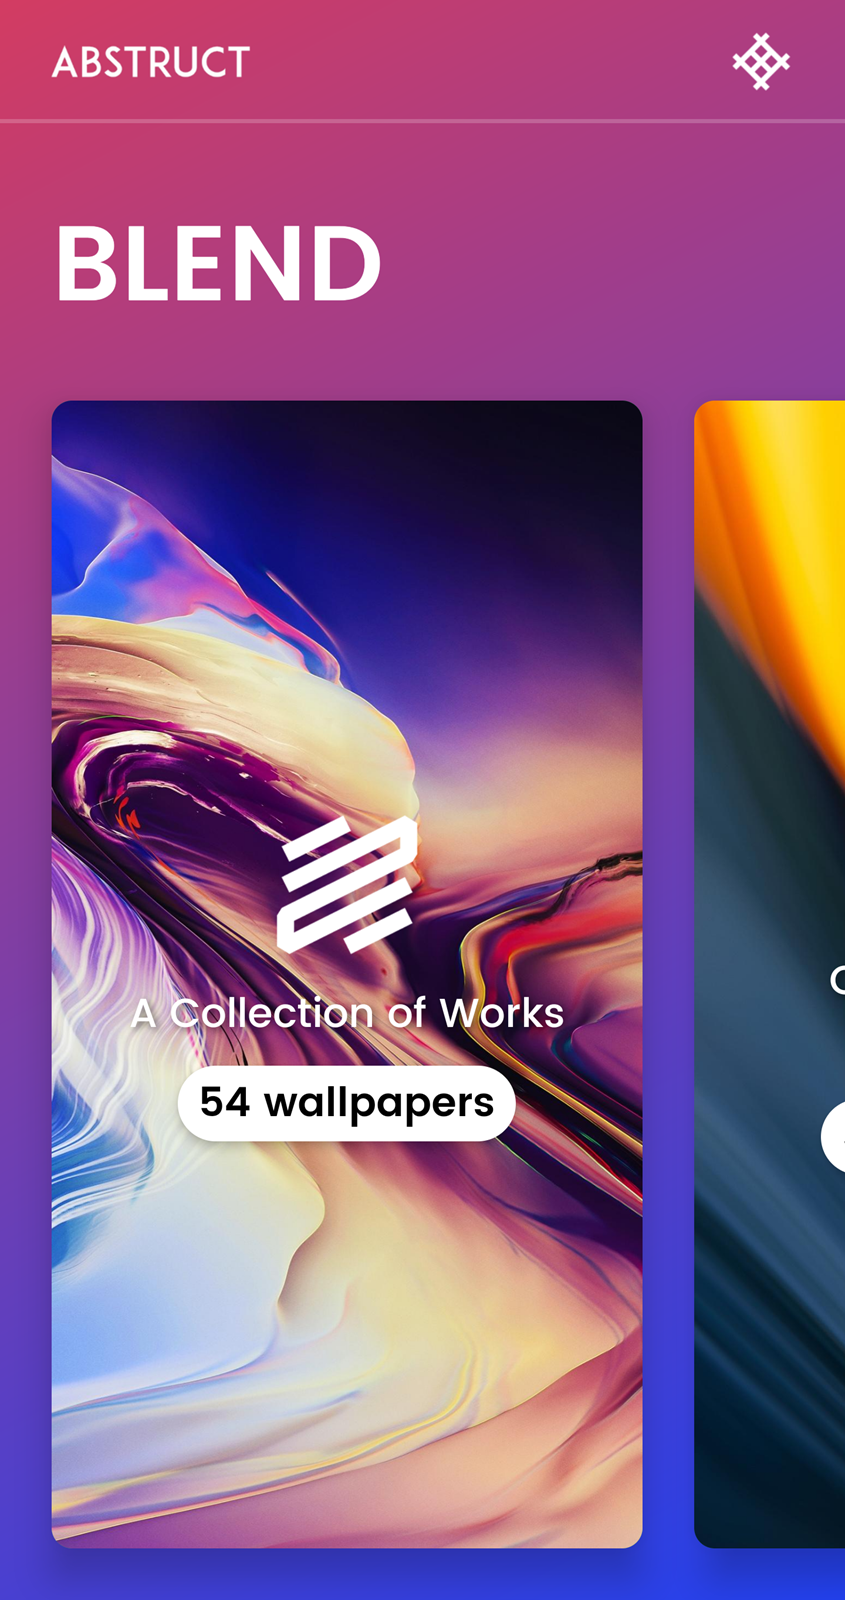 免費下載 OnePlus 高品質桌布！ Abstruct &#8211; Wallpapers in 4K 任何手機都可以安裝 @3C 達人廖阿輝